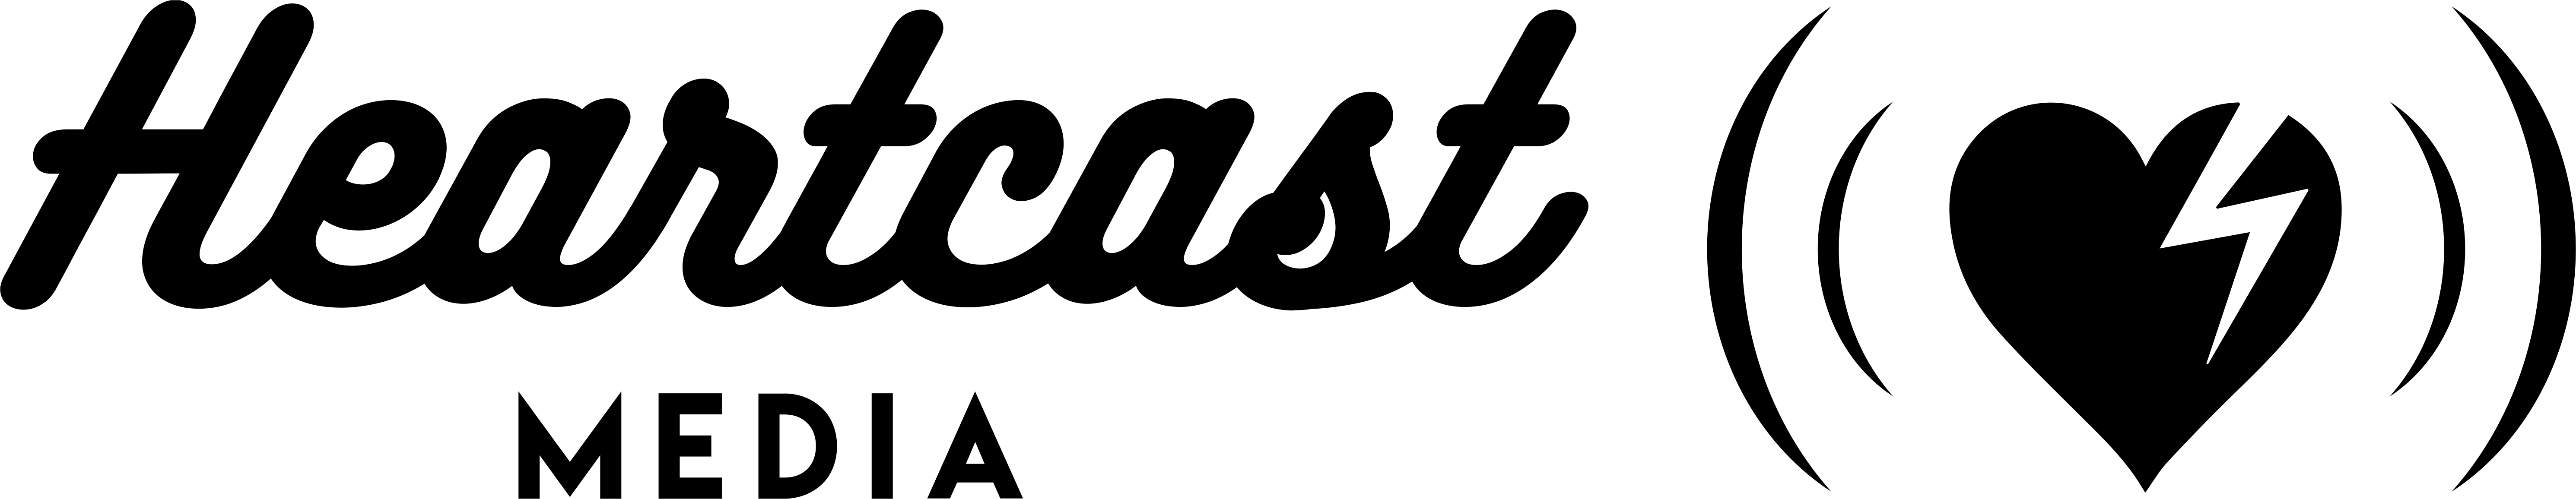 heartcast media logo